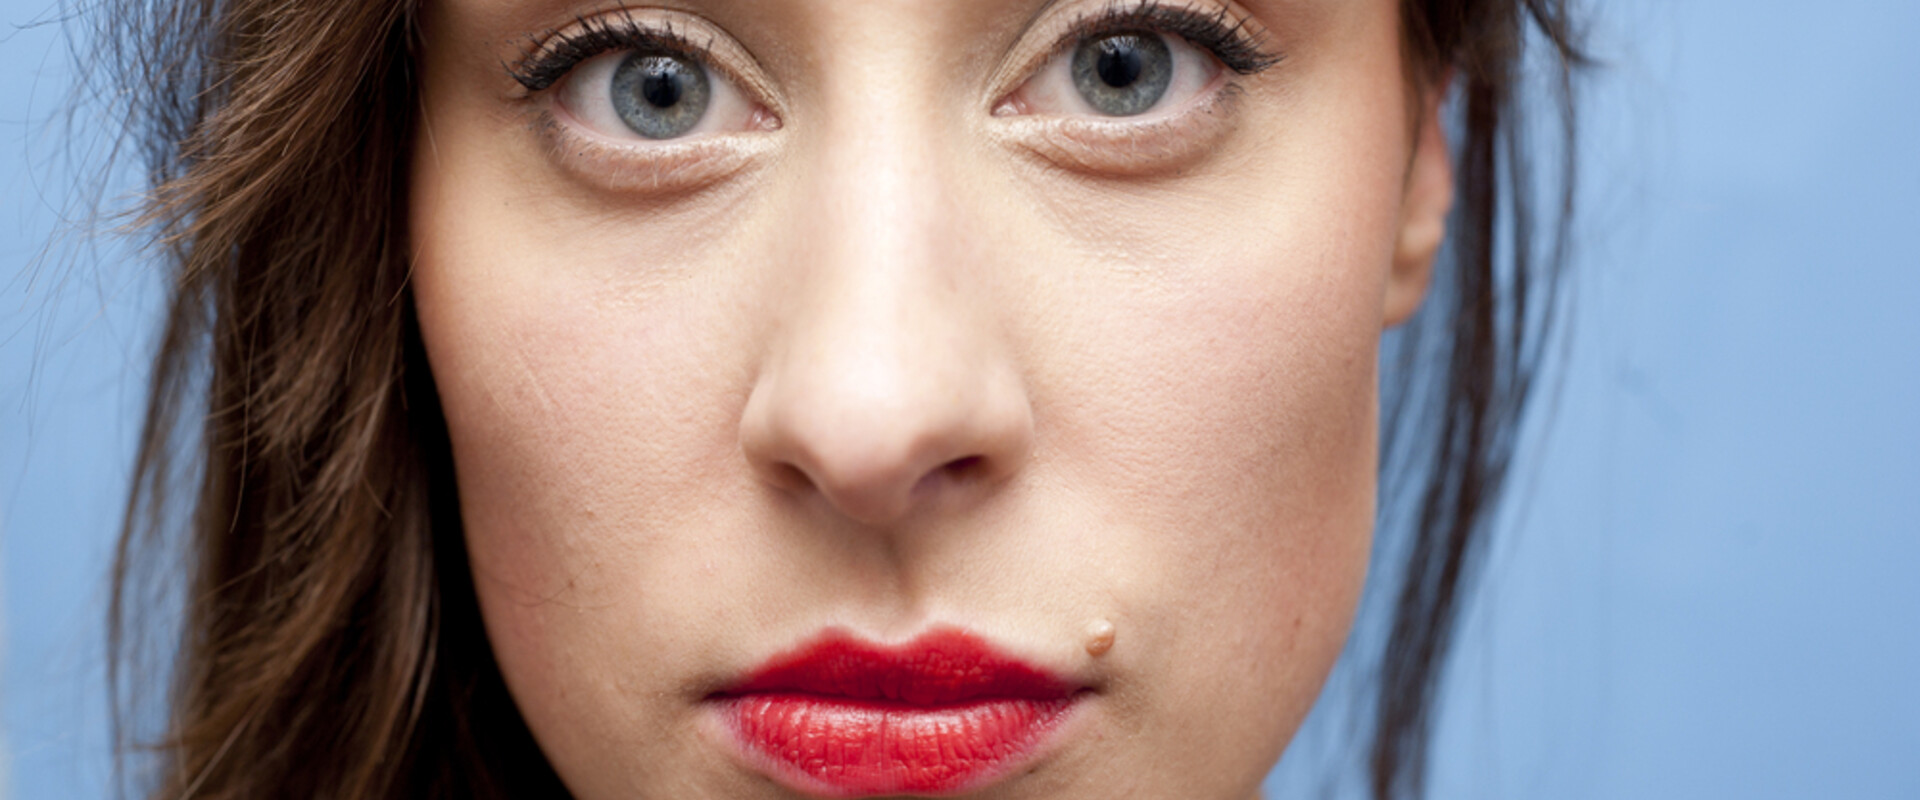 פנים של אישה (צילום: Concept Photo, Shutterstock)